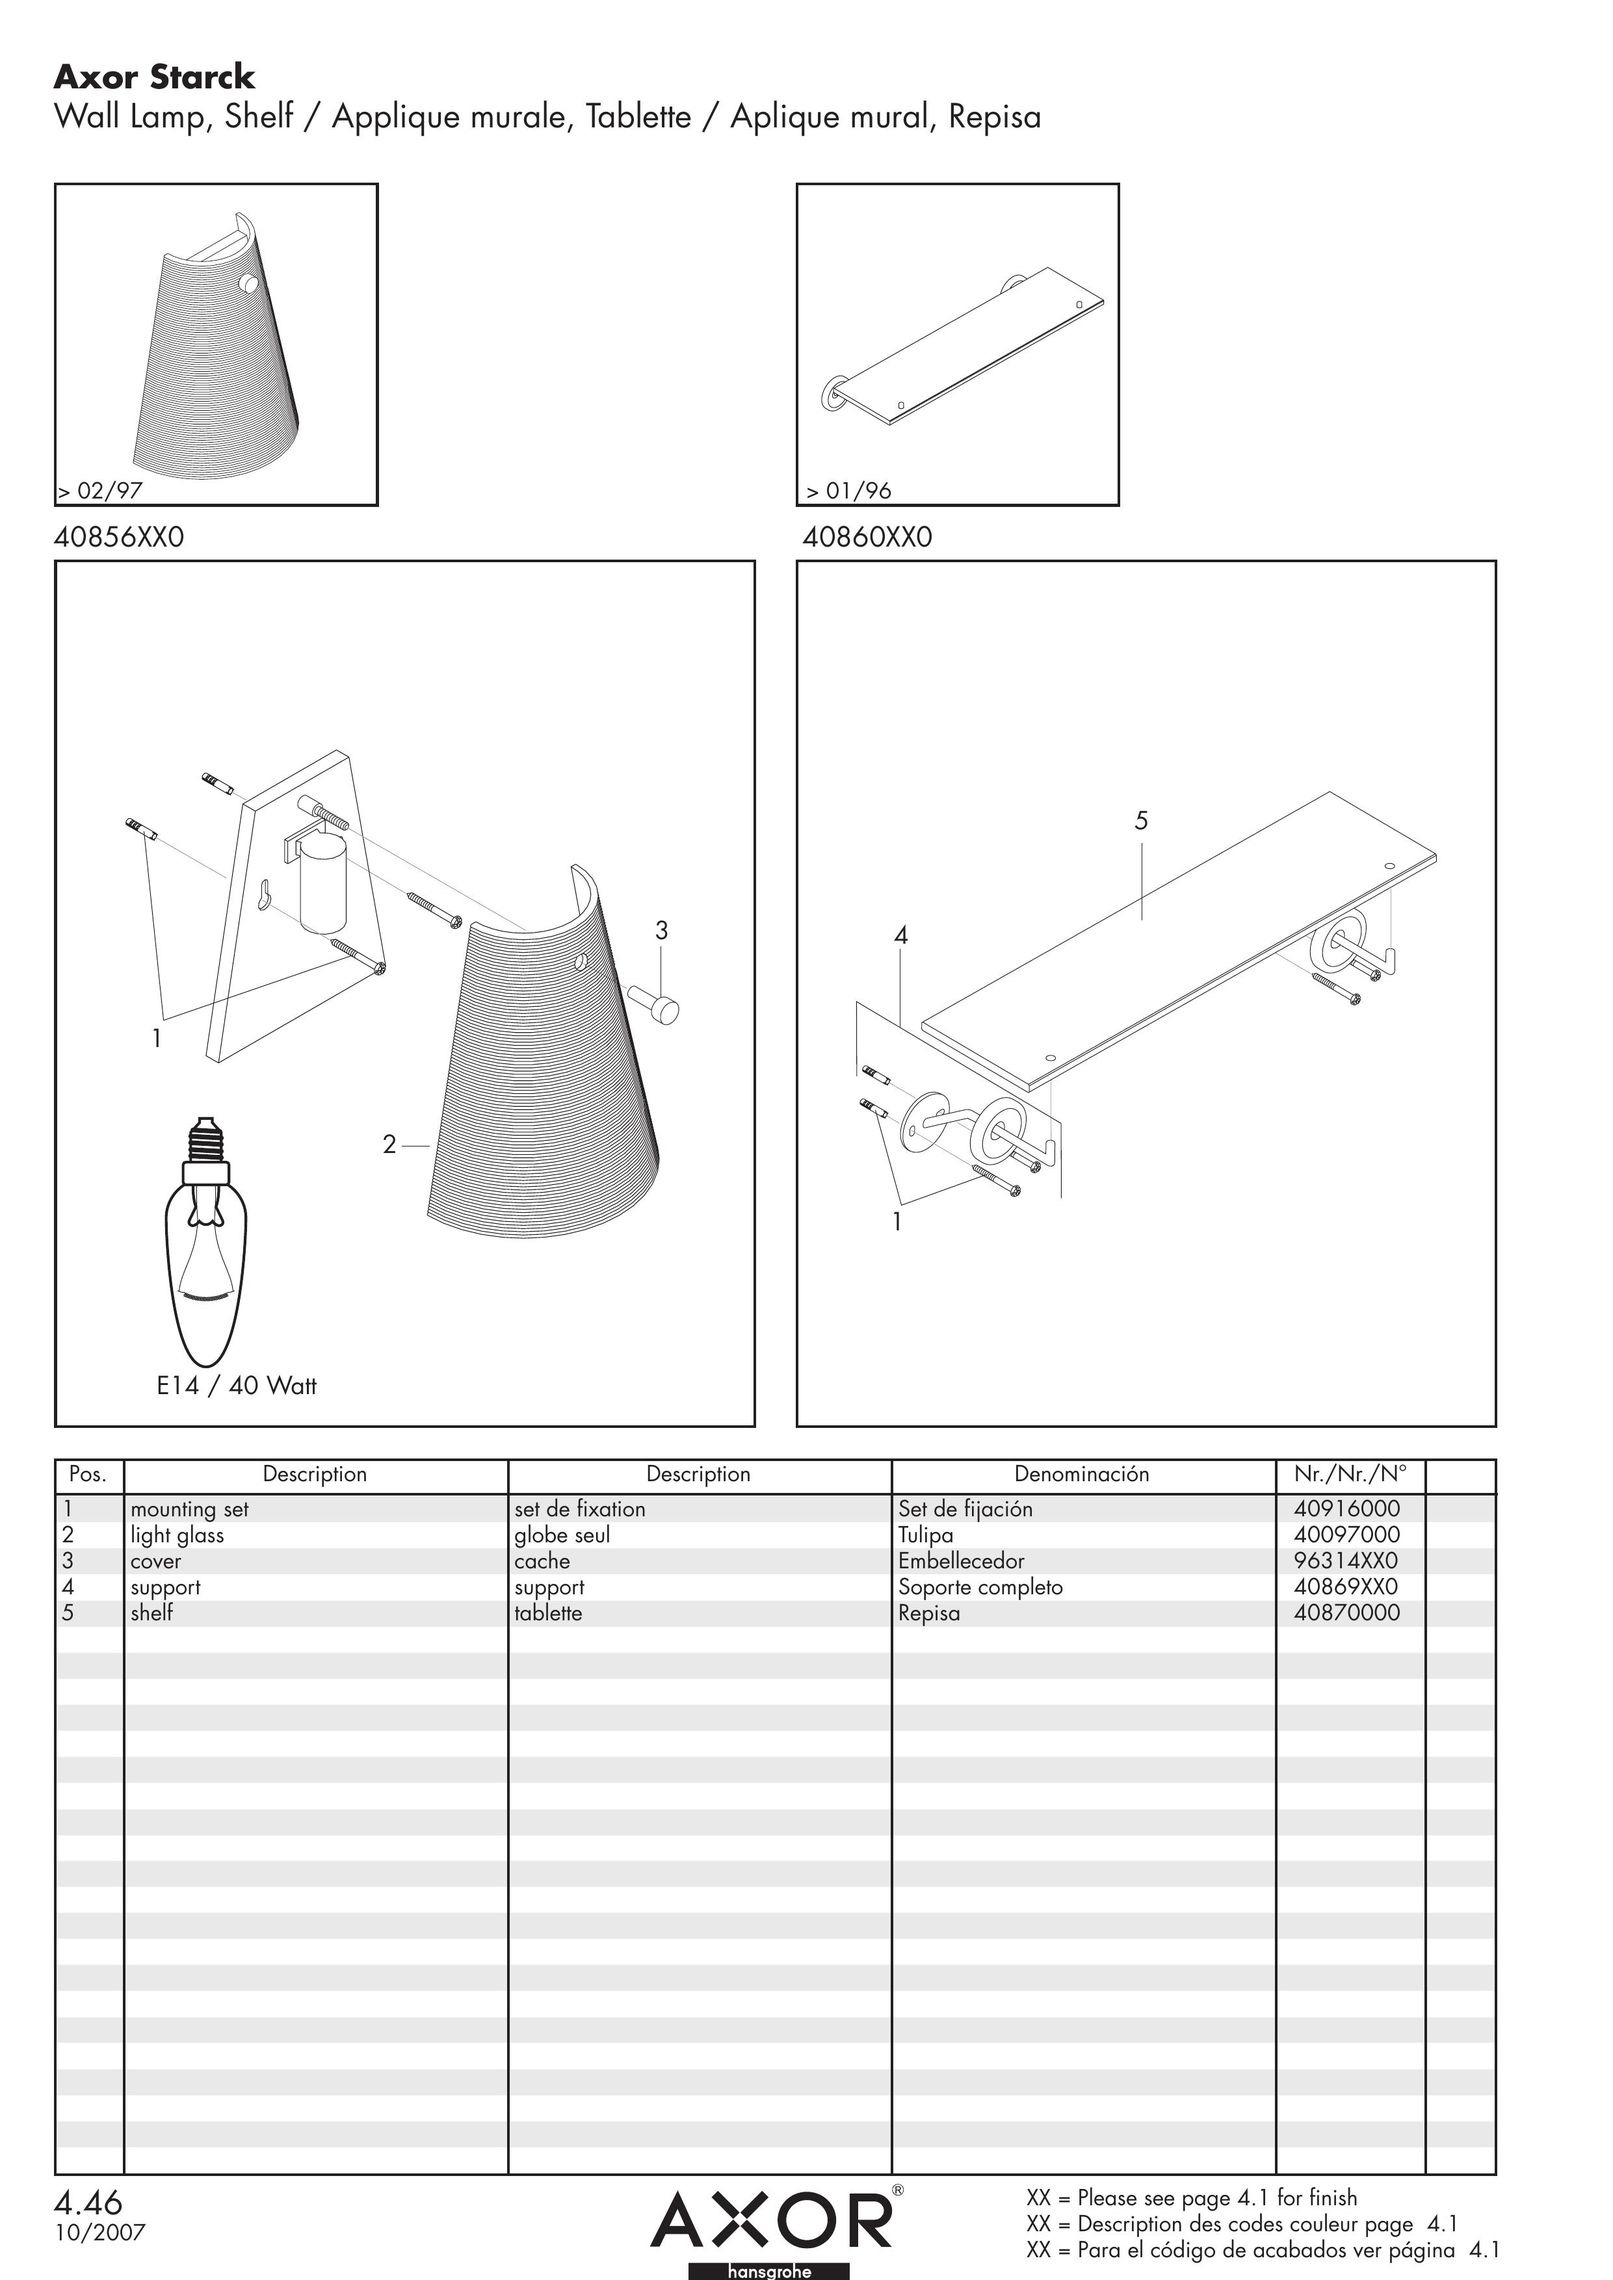 Axor 40870000 Work Light User Manual